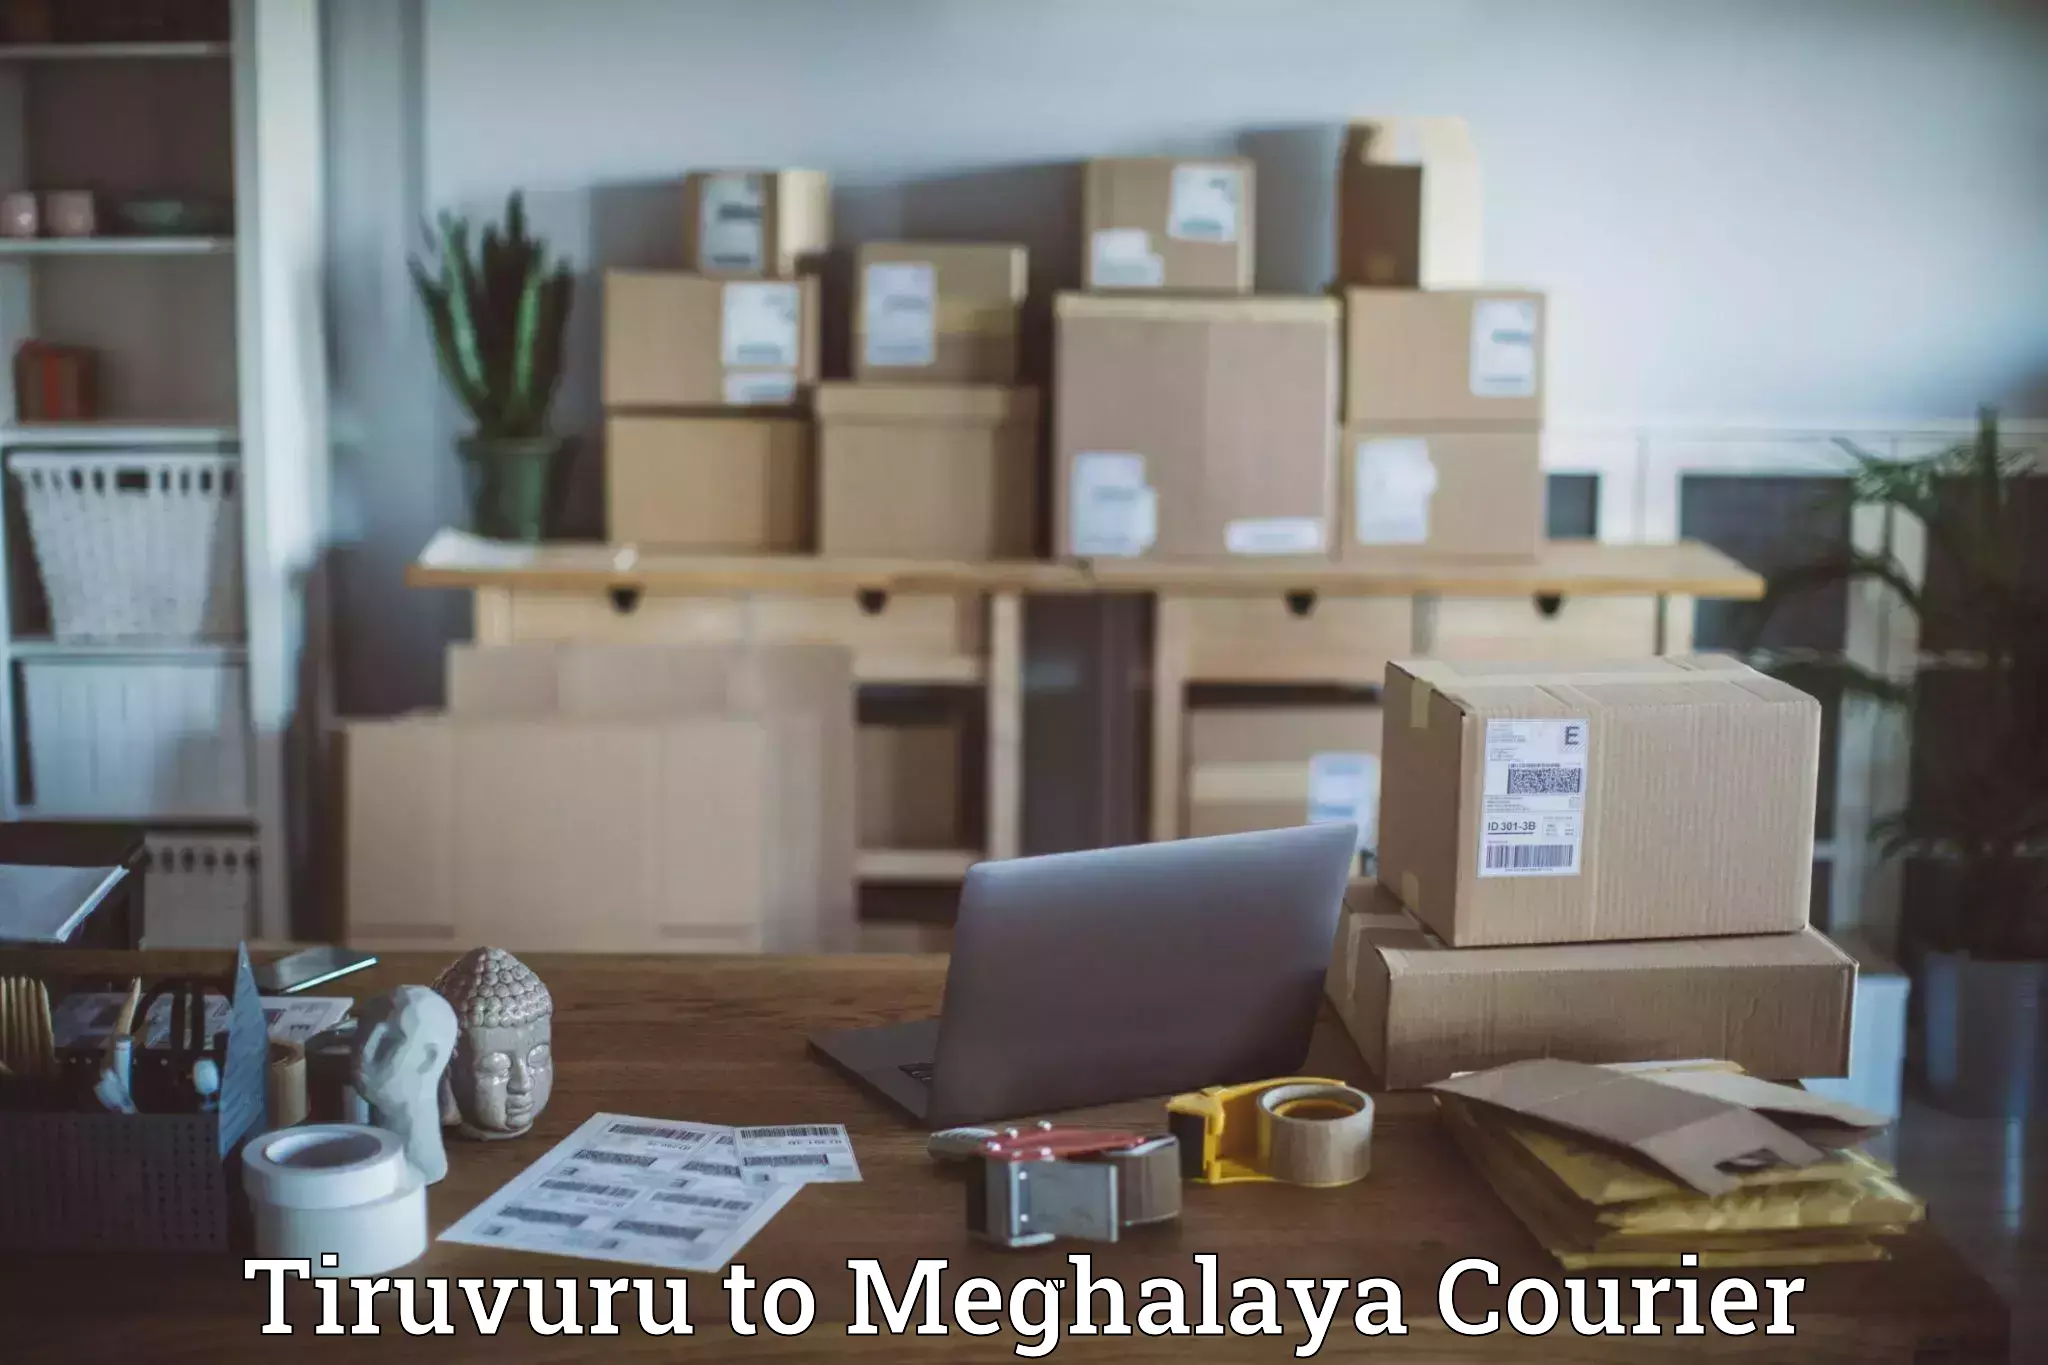 Courier service efficiency Tiruvuru to Shillong